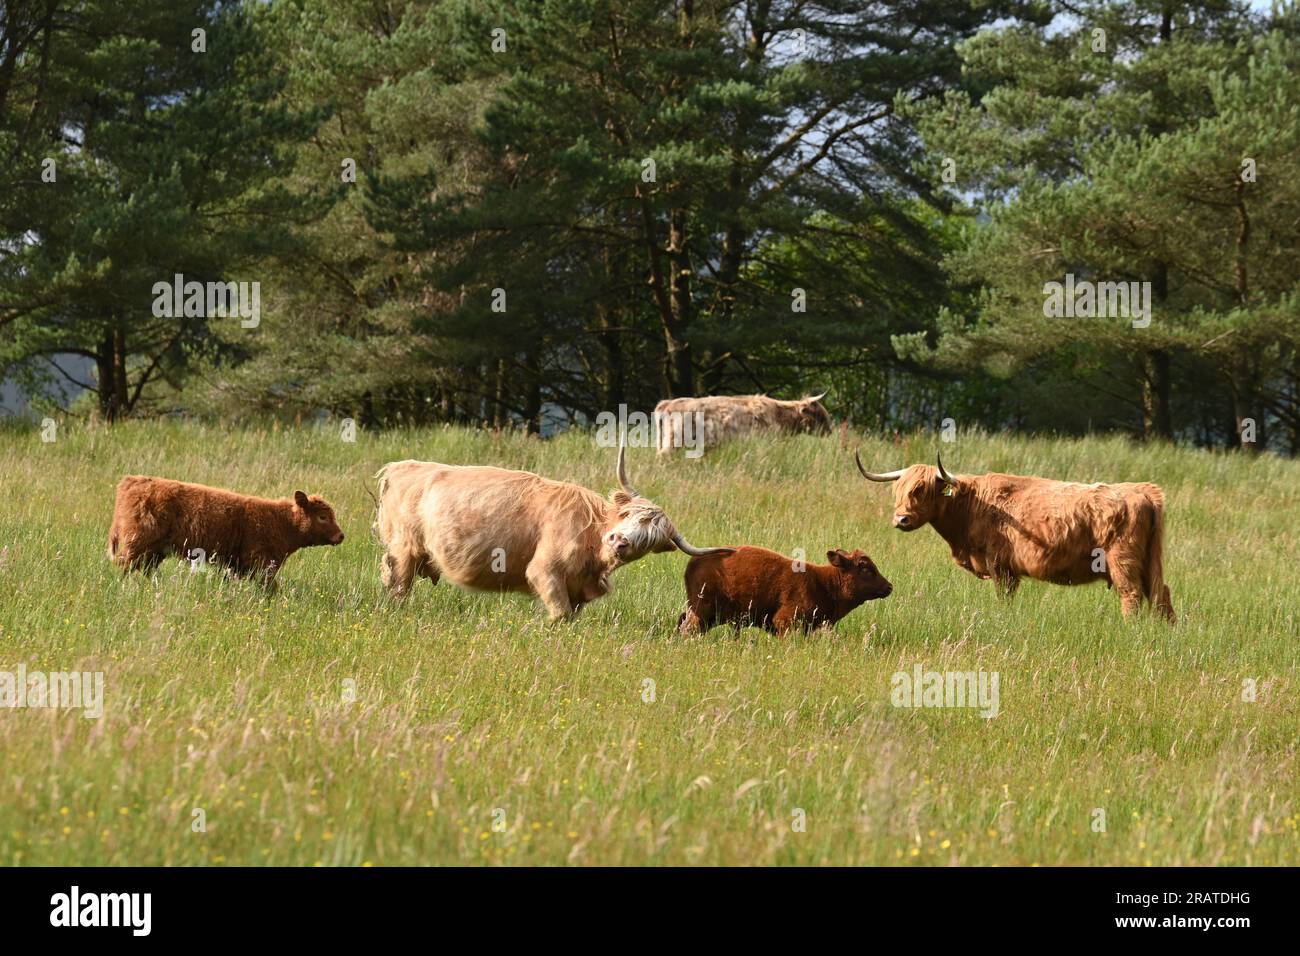 Vache des Highlands attaquant le veau d'une autre vache qui errait trop près - son propre veau marche derrière elle - Écosse, Royaume-Uni Banque D'Images